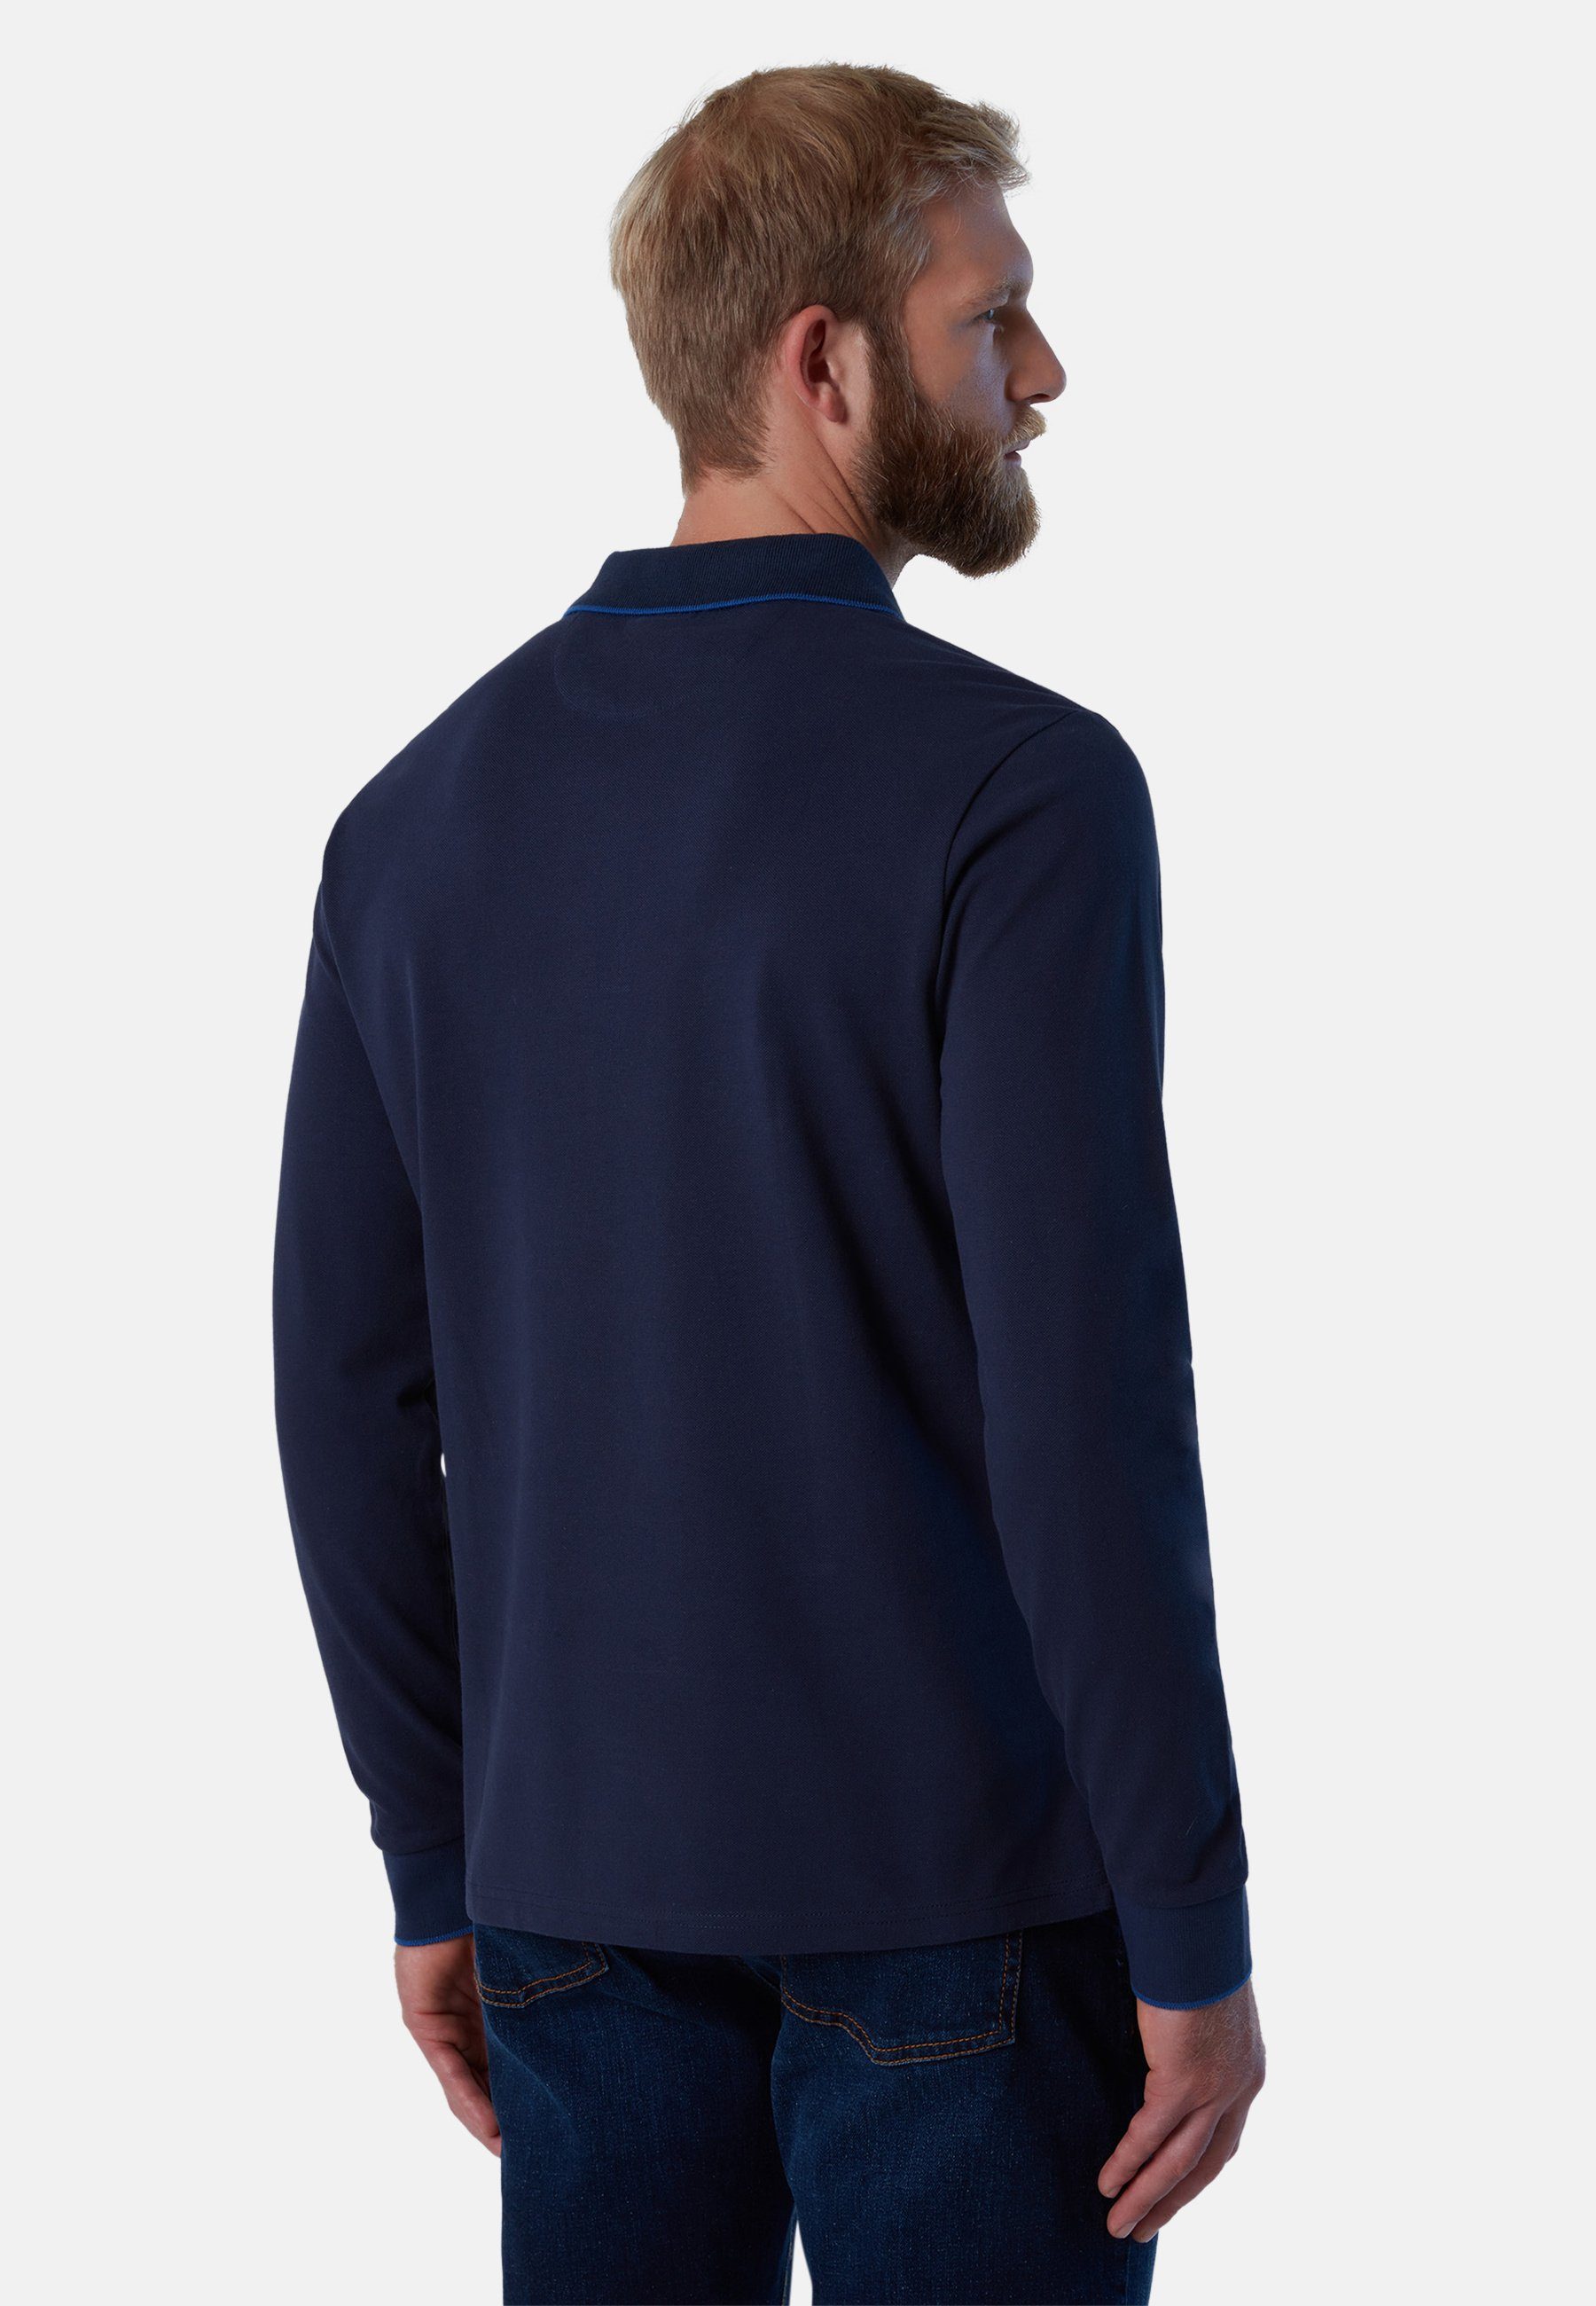 North Sails Design Poloshirt mit Langärmeliges Poloshirt klassischem BLUE